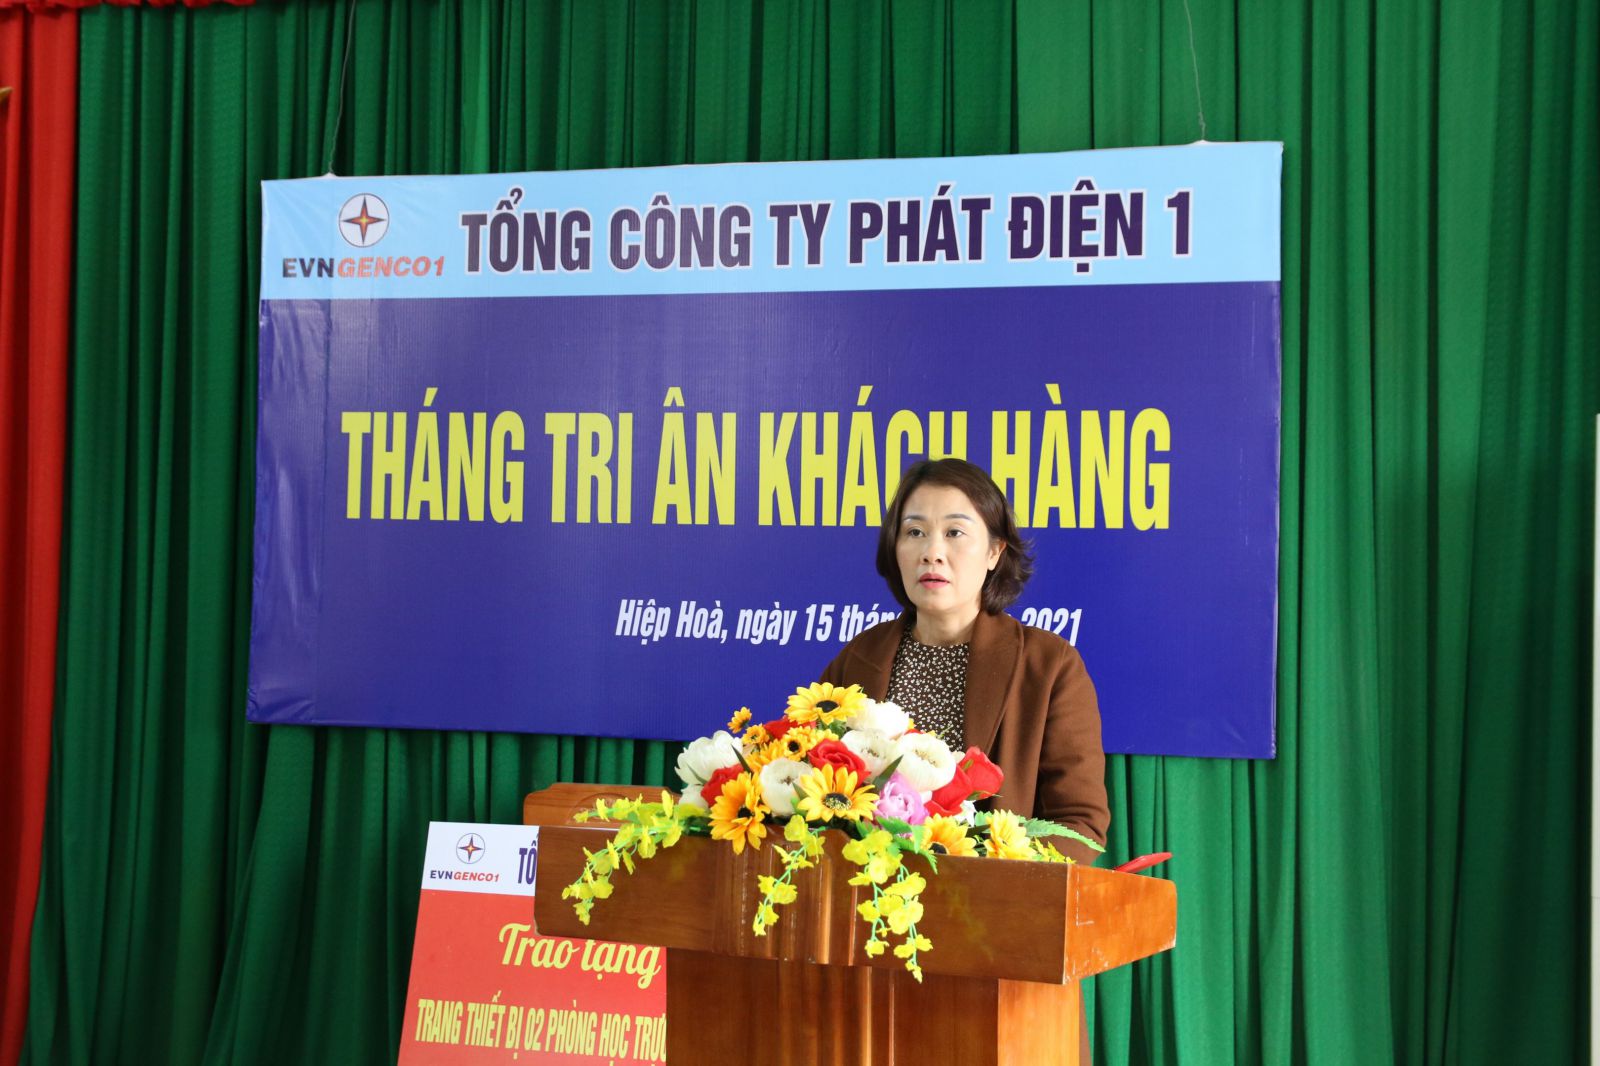 Cô Nguyễn Thị Huyền, Hiệu trưởng nhà trường phát biểu tại lễ trao tặng thiết bị phòng học trực tuyến 